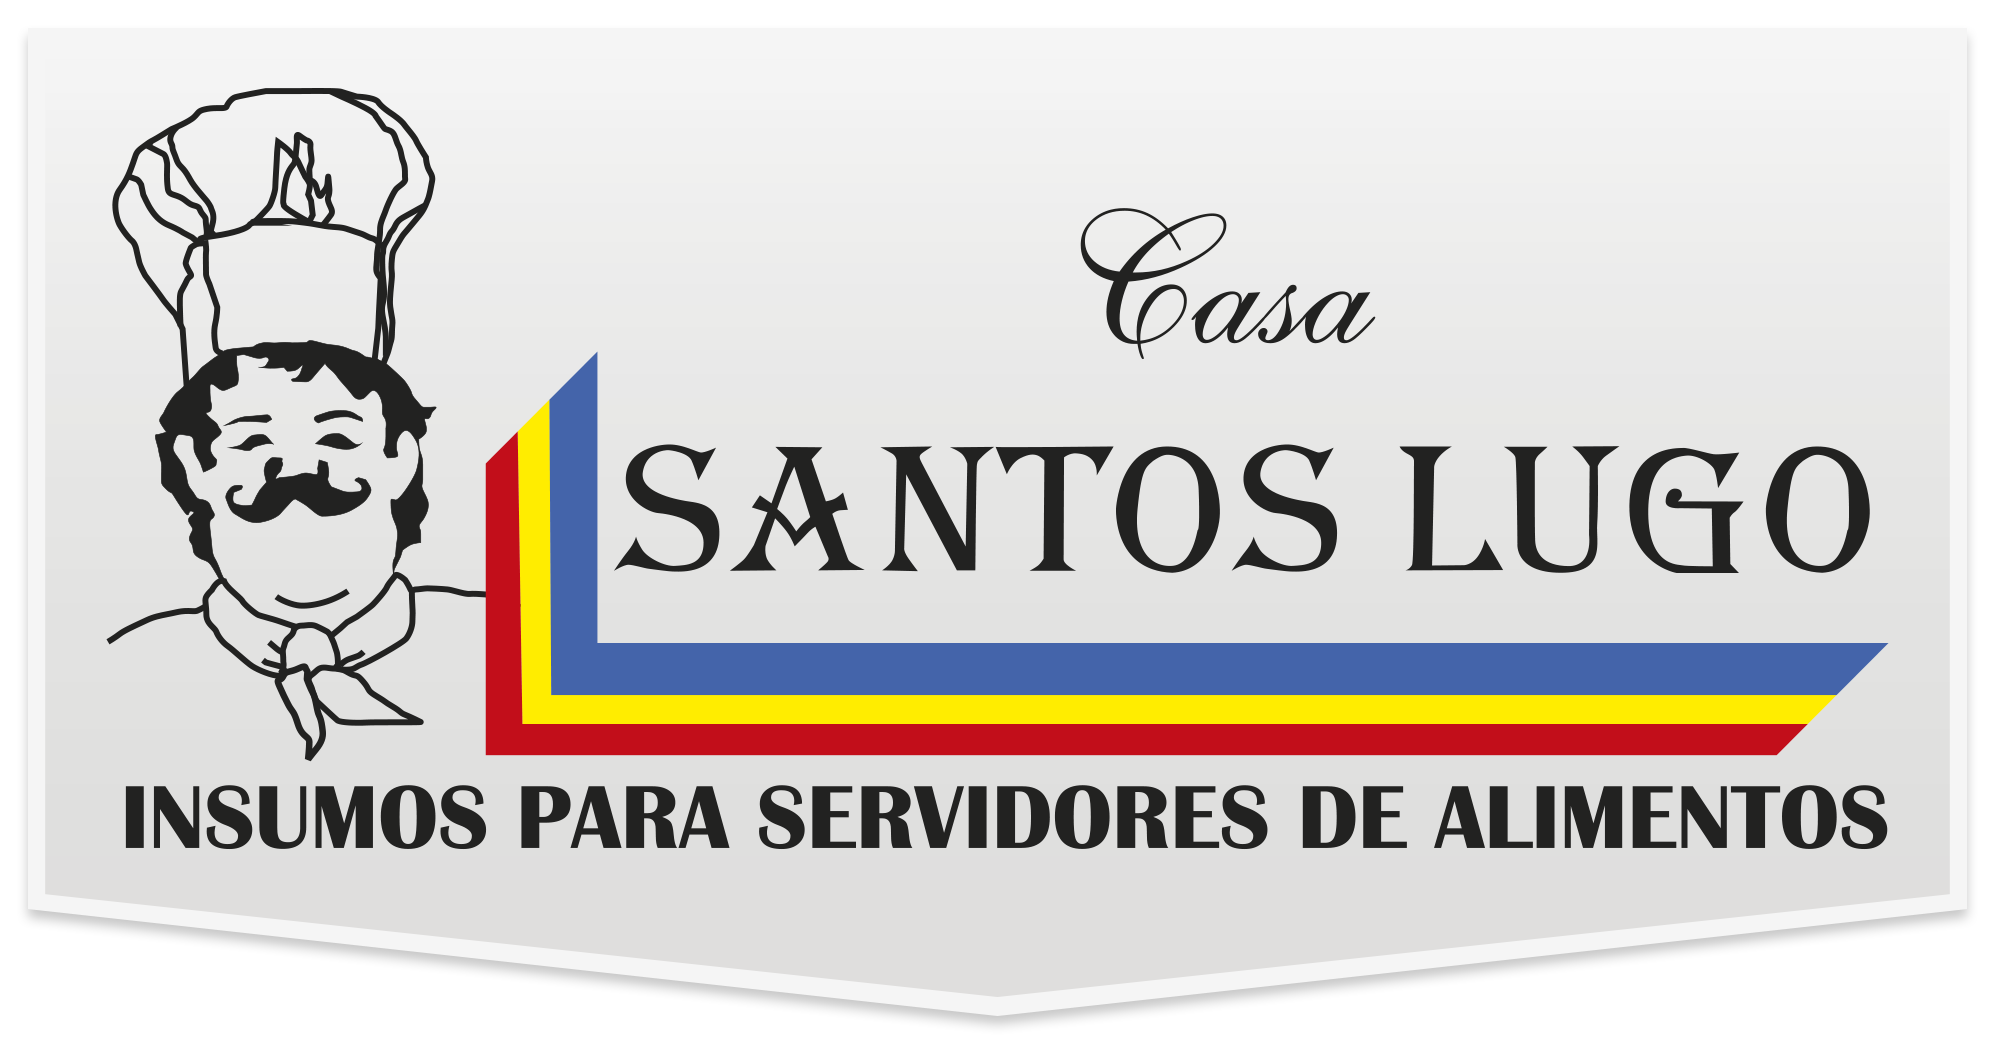 Santos Lugo | Categoría Mascotas